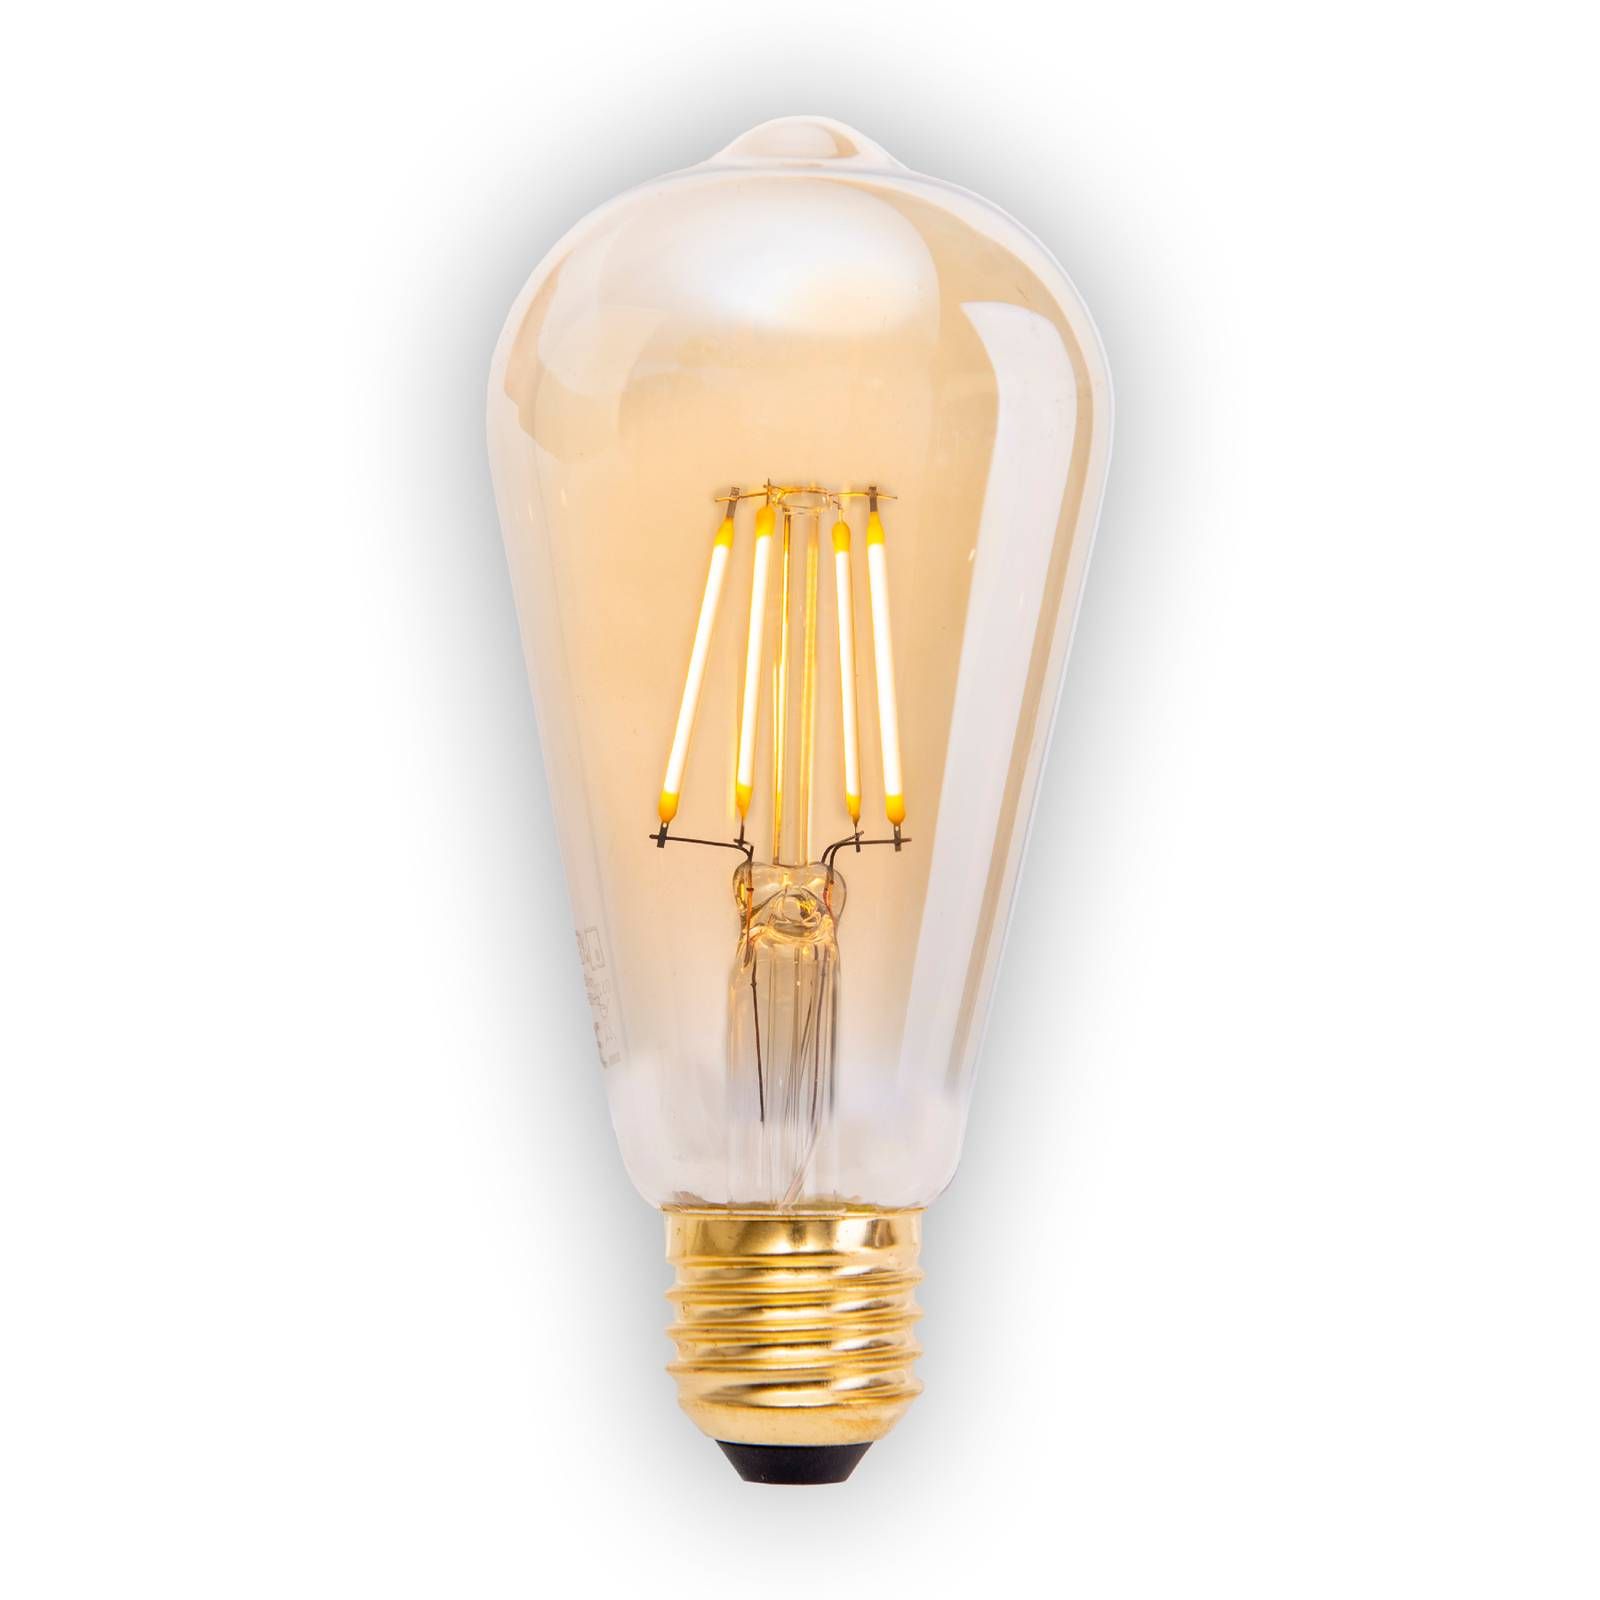 Näve LED žiarovka E27 4W 320lm teplá biela stmiev. 4ks, kov, sklo, E27, 4W, Energialuokka: F, L: 14.6 cm